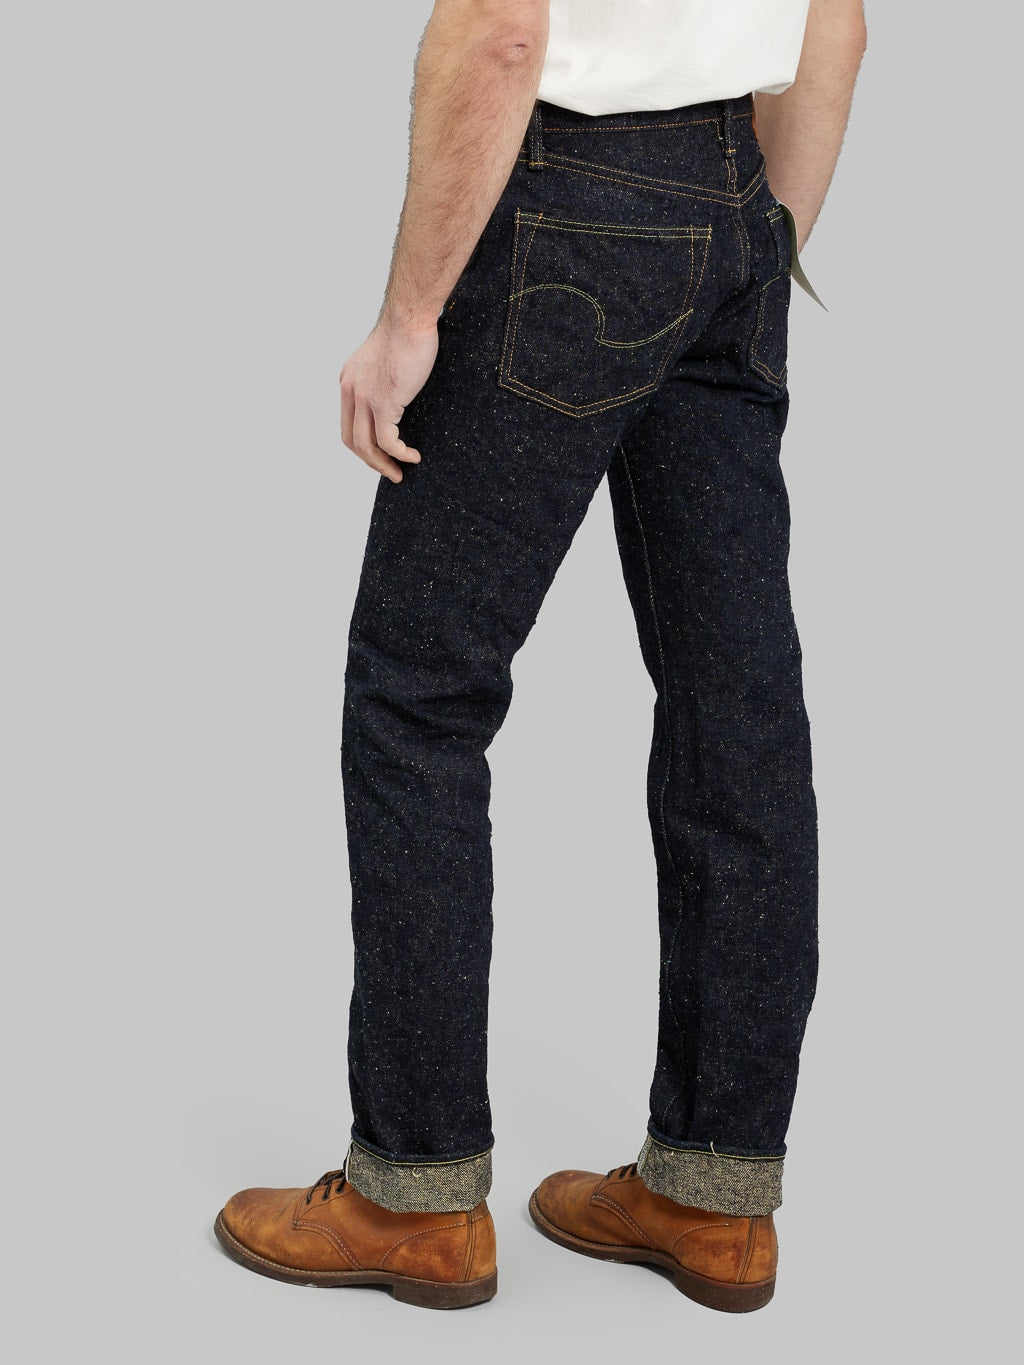 ONI Denim 288 Asphalt 20oz Regular Straight Jeans mid rise look